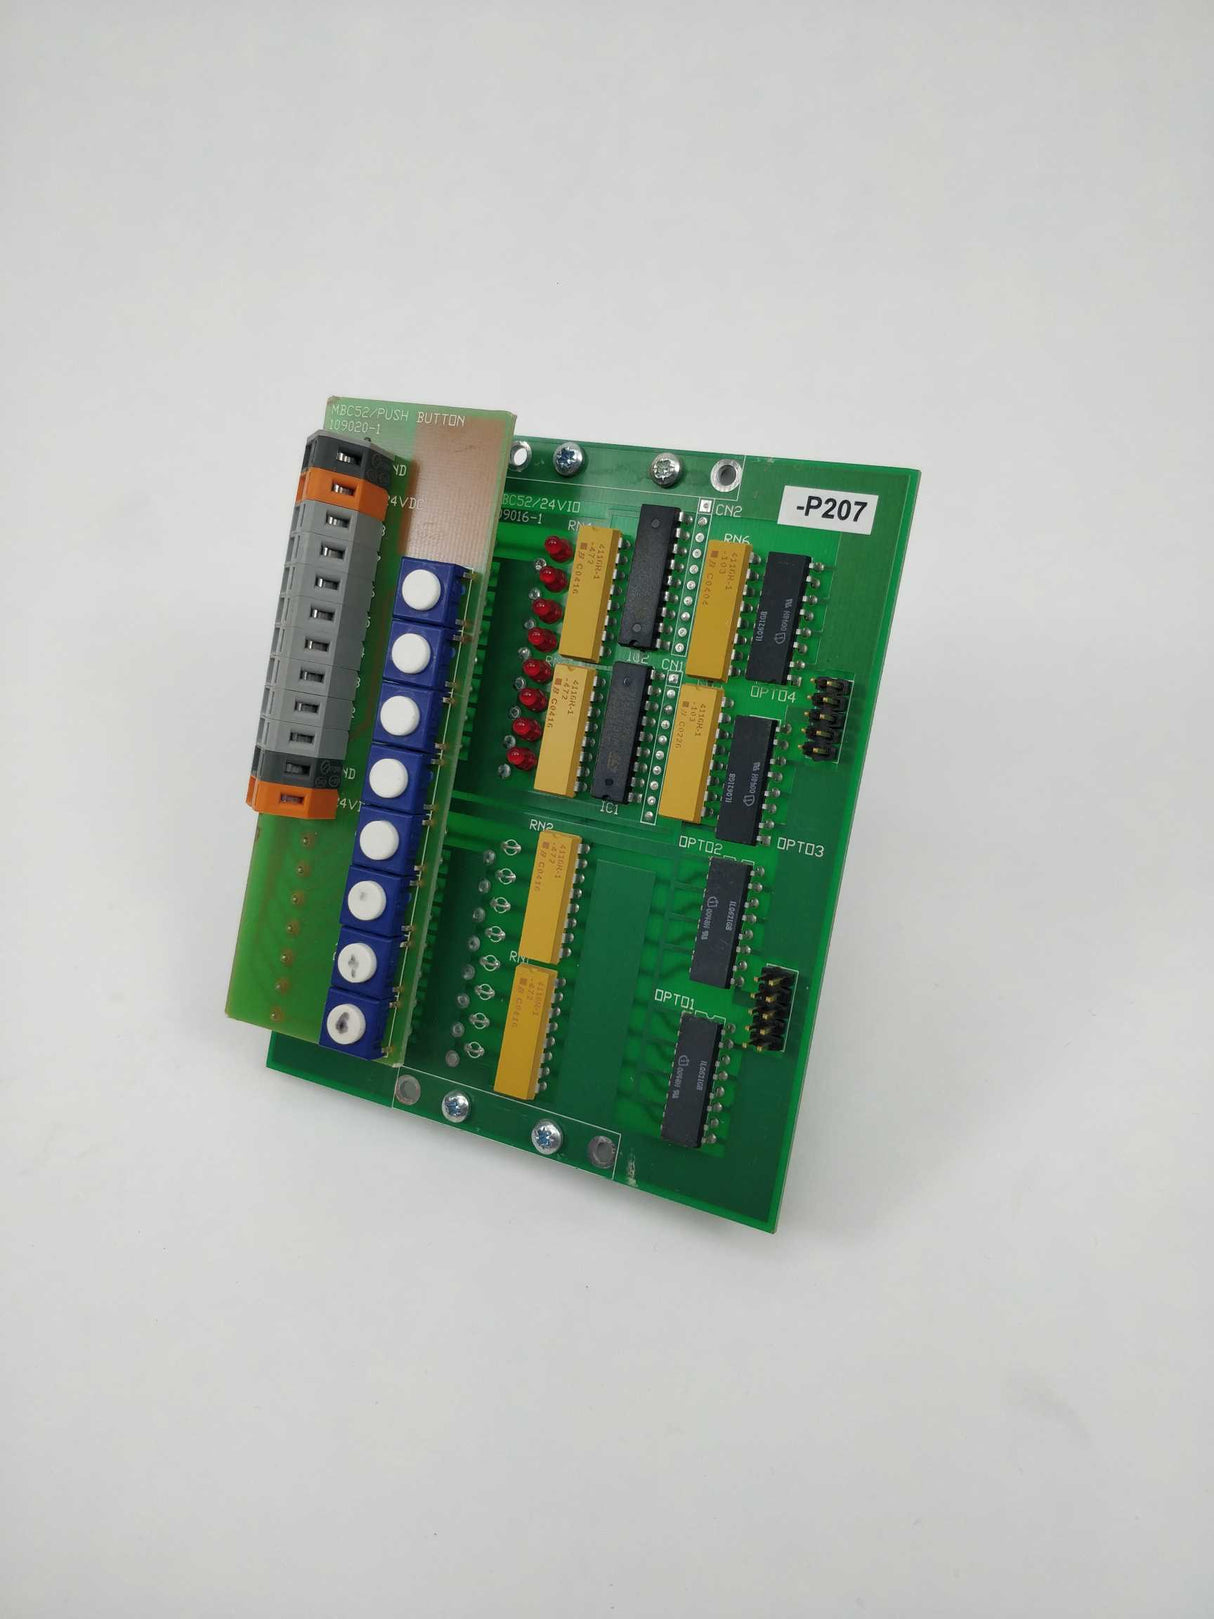 AU Teknik MBC52/24VI0 109016-1 Circuit board